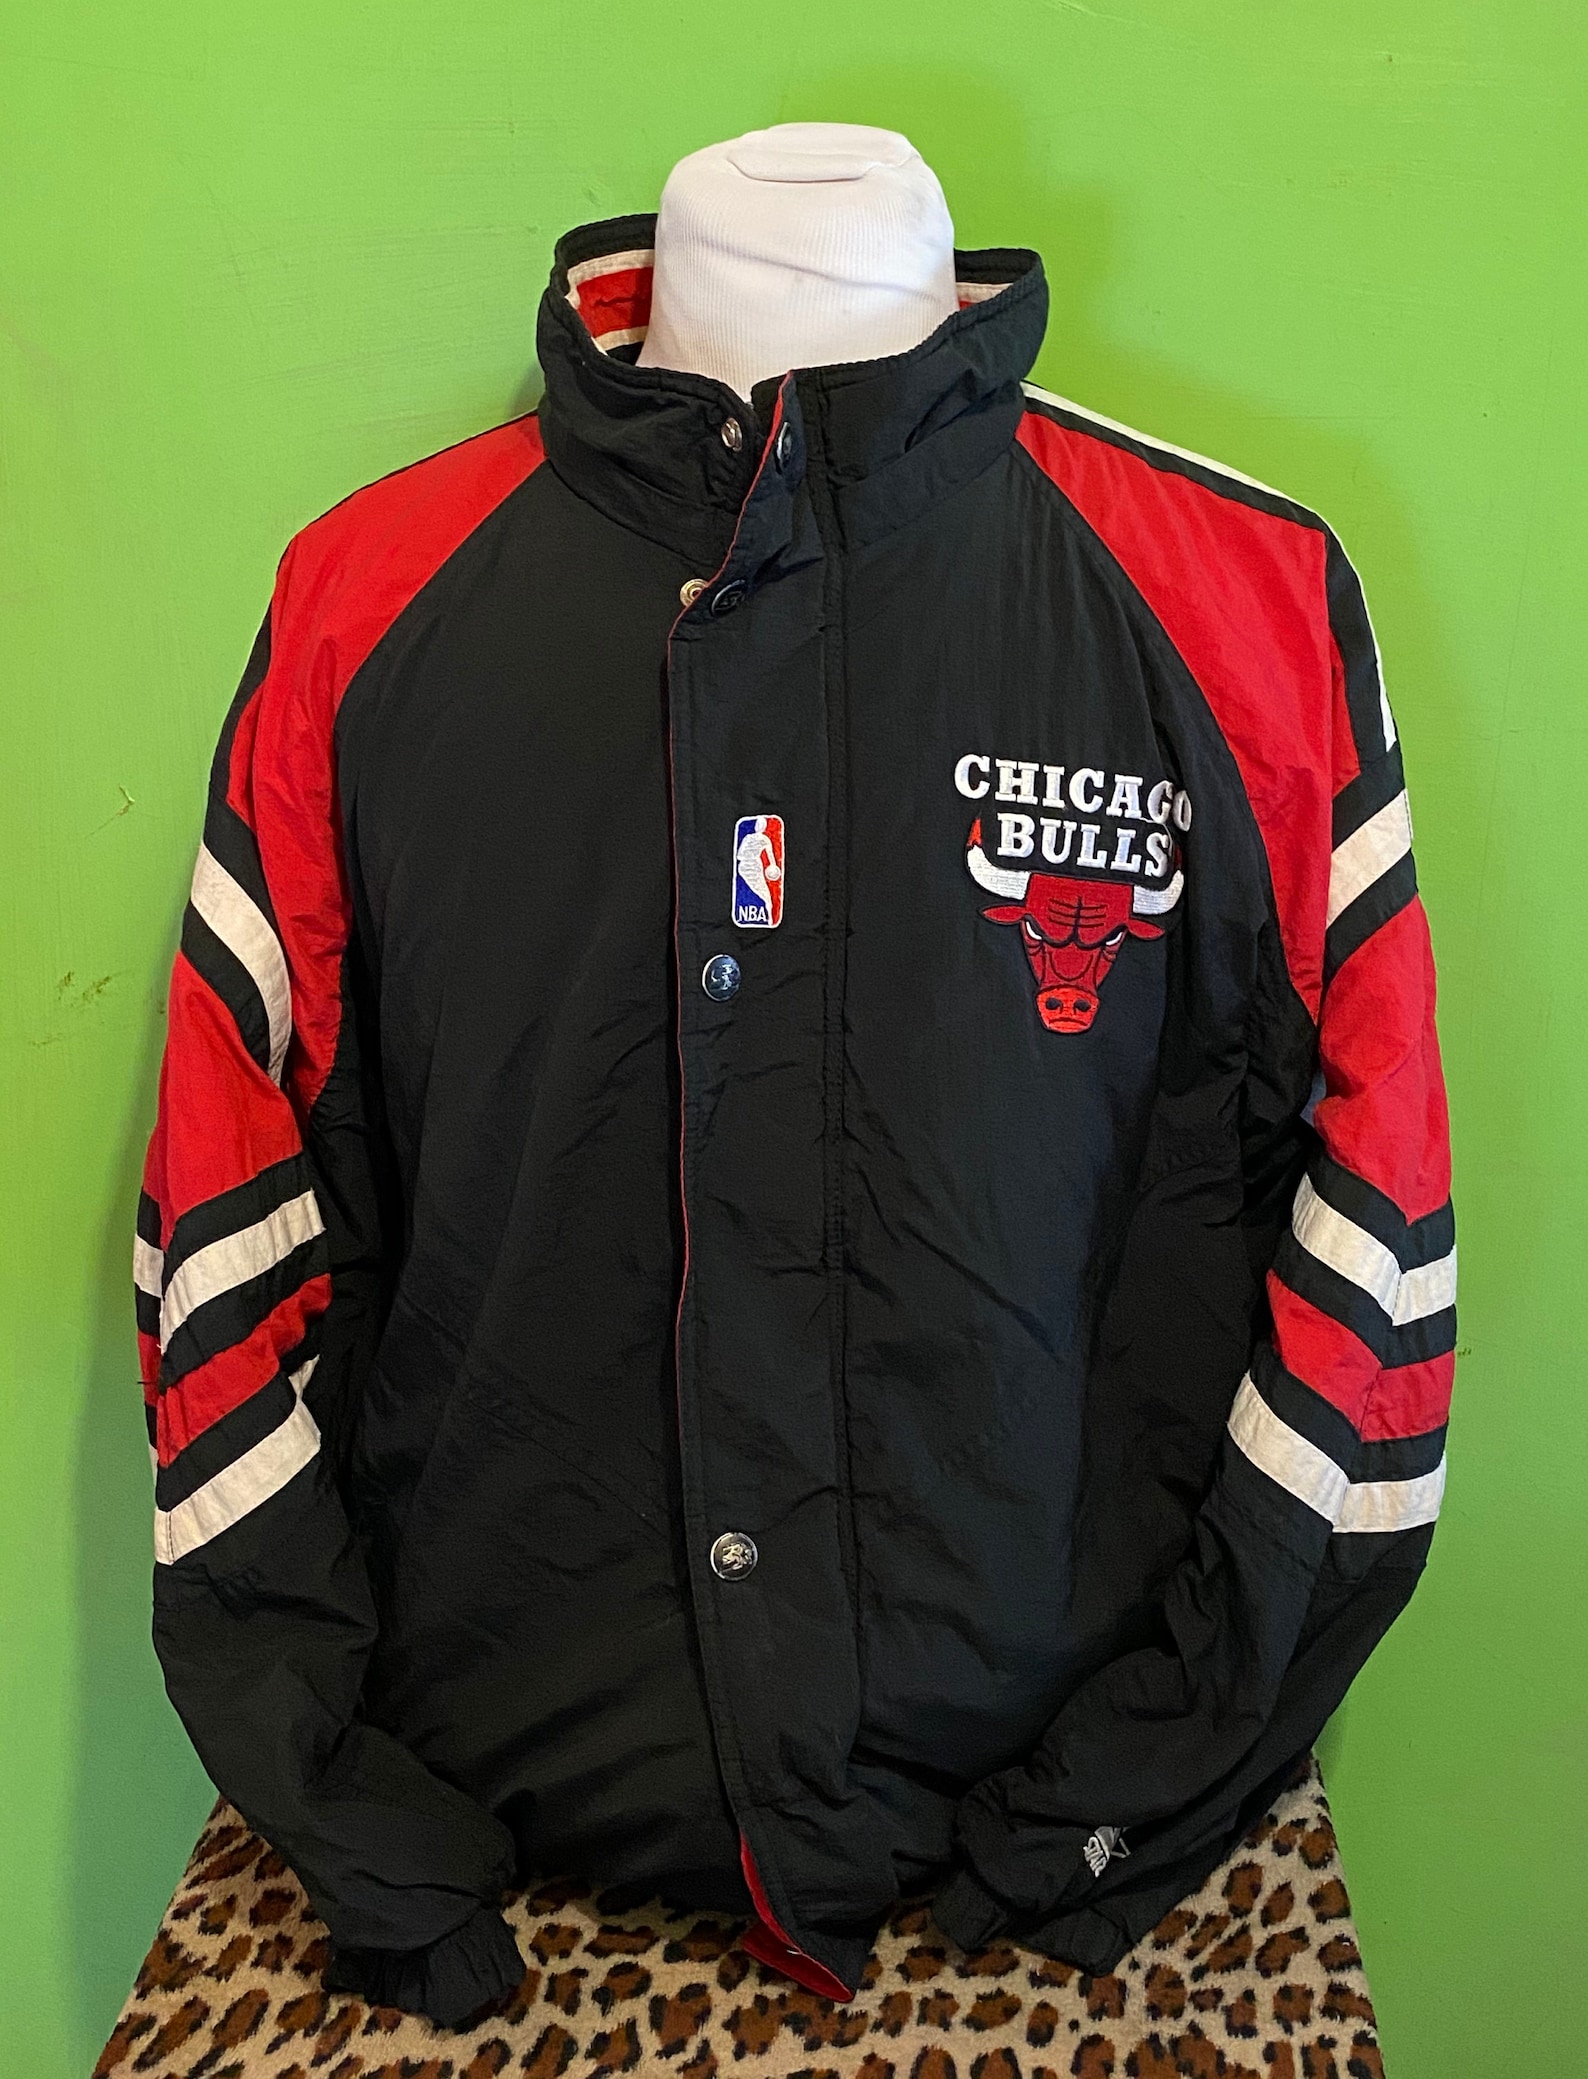 Vintage 90s Chicago Bulls Starter 1990s NBA Basketball | Etsy